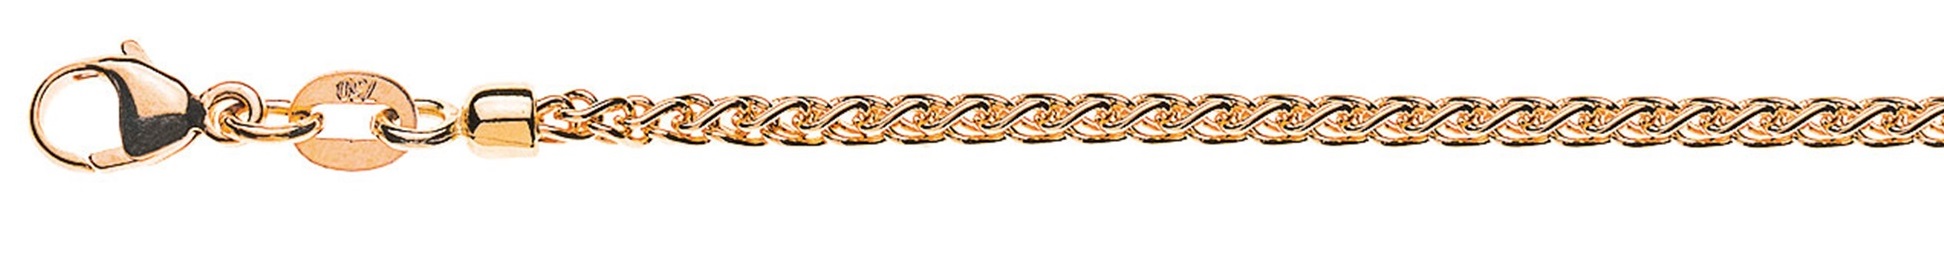 AURONOS Prestige Necklace rose gold 18K cable chain 50cm 2.15mm